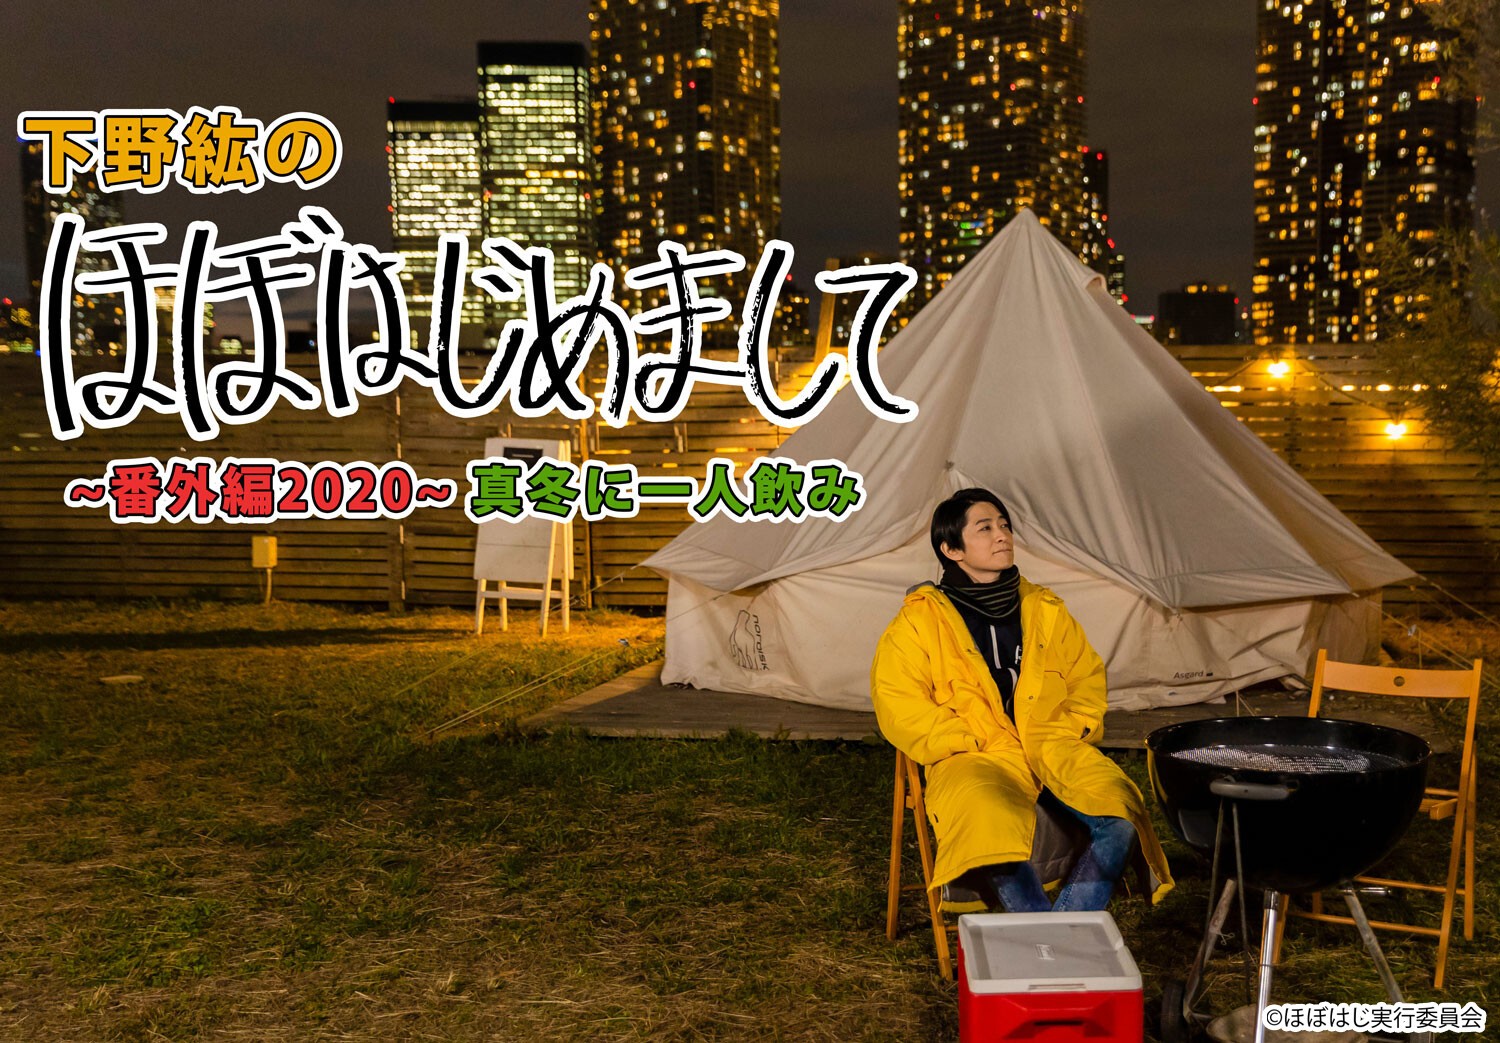 下野紘のほぼはじめまして 番外編 真冬に一人飲み 12 24 木 Tokyo Japan アニメイト Live Stream